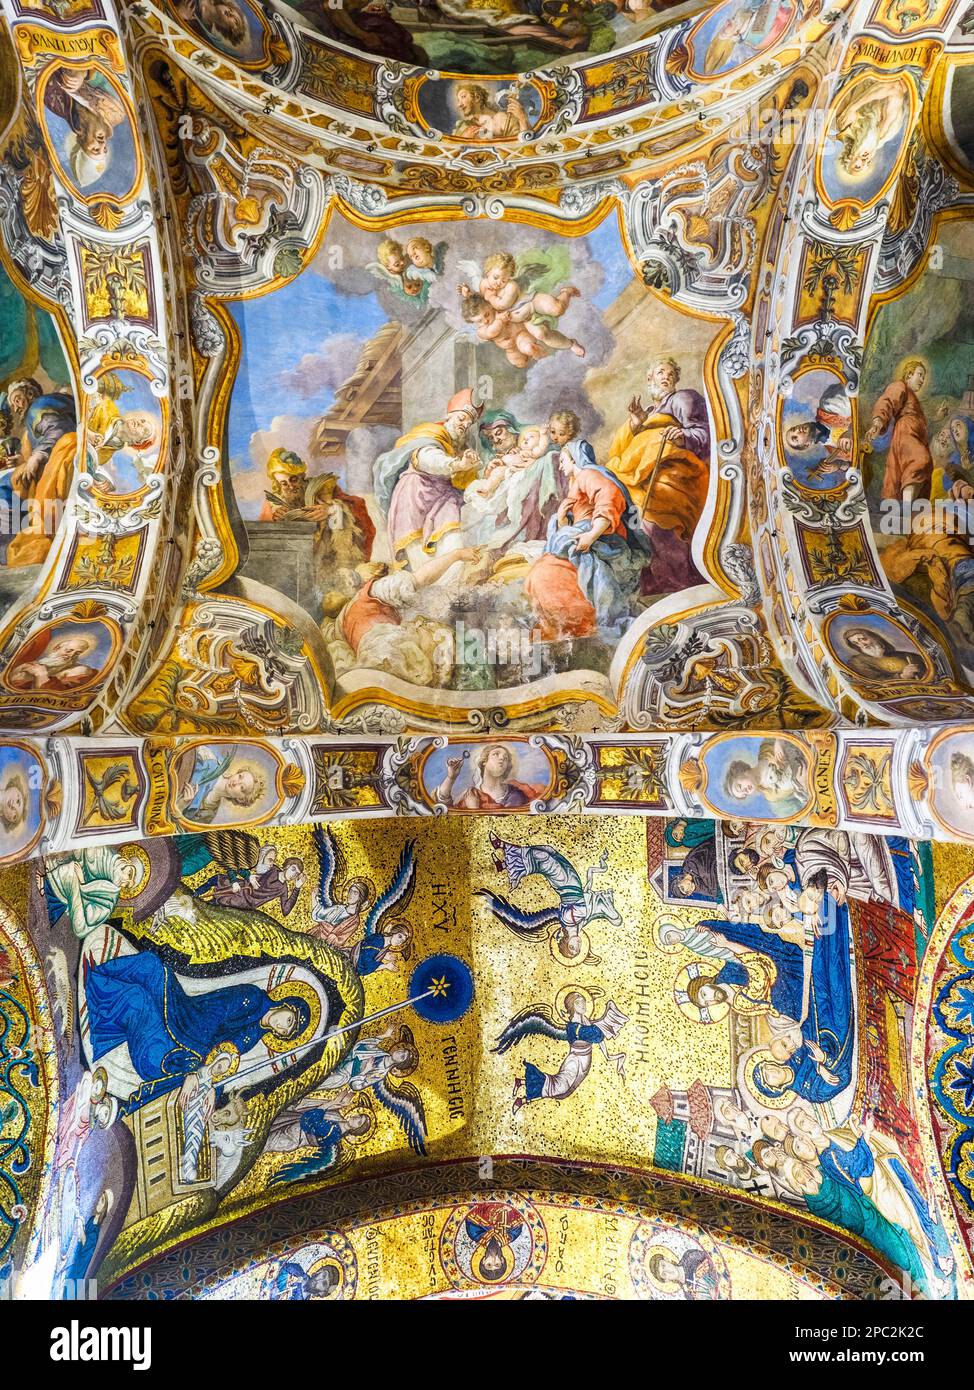 Mosaiken mit der Himmelfahrt der Jungfrau unten rechts und der Geburt Christi unten links; Fresken von Olivio Sozzi (17. Jahrhundert) oben - Kirche Santa Maria dell'Ammiraglio - Palermo, Sizilien, Italien Stockfoto